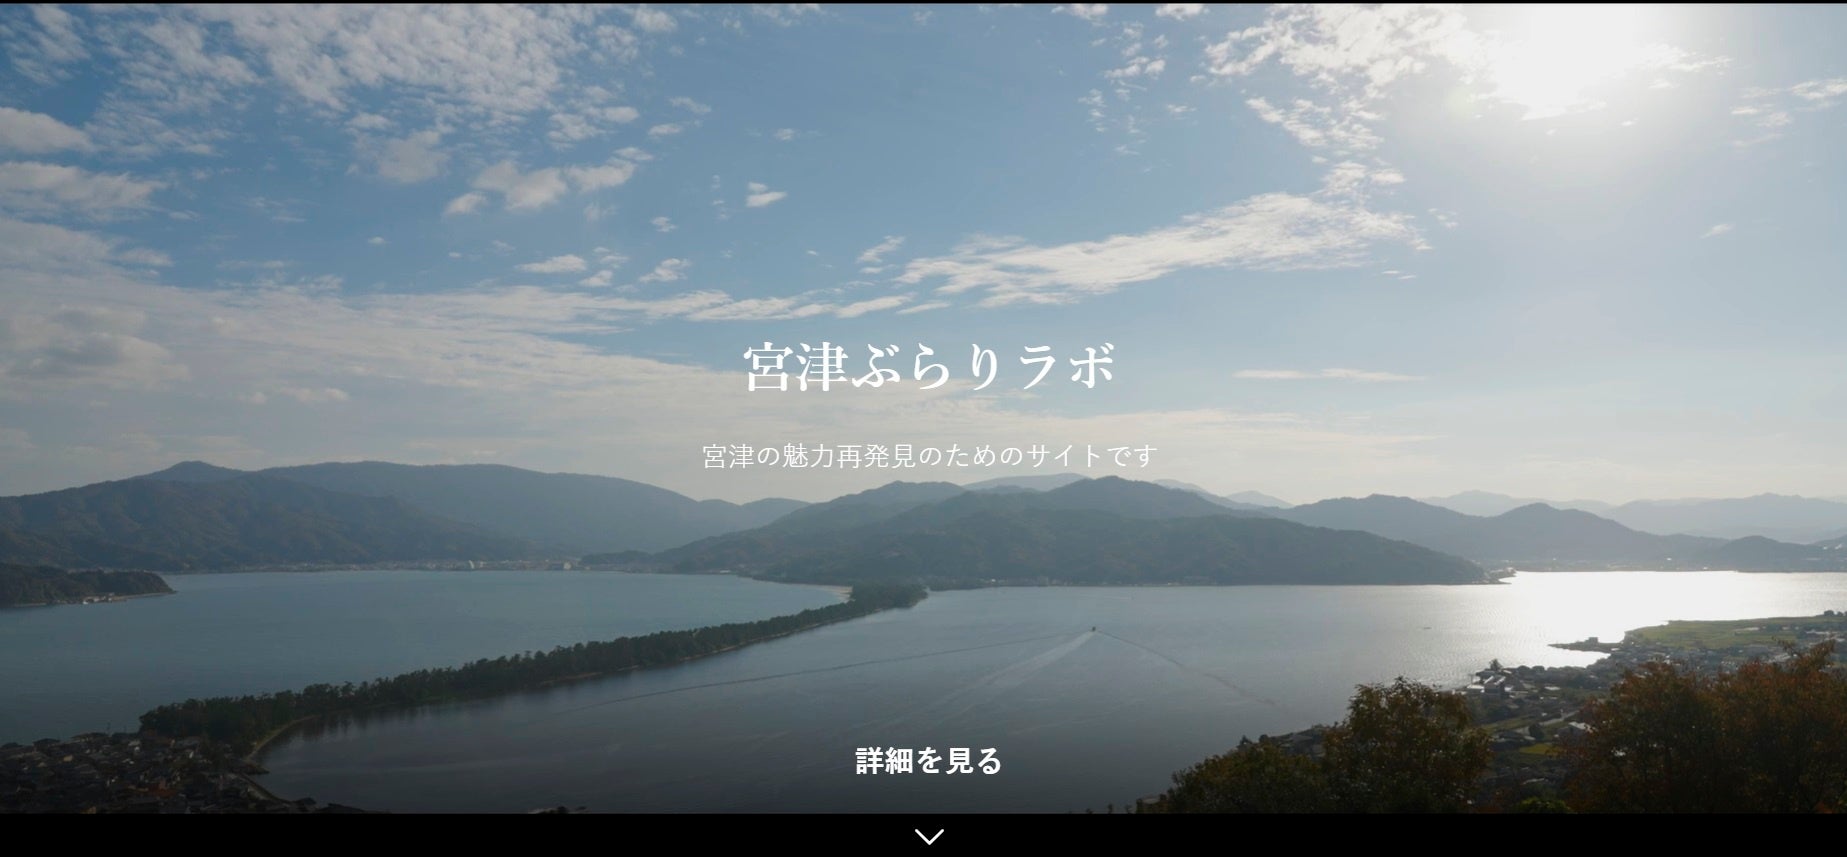 漫画チラシ作成記念「亀山温泉ホテル」が
企業研修特典キャンペーンを開始！